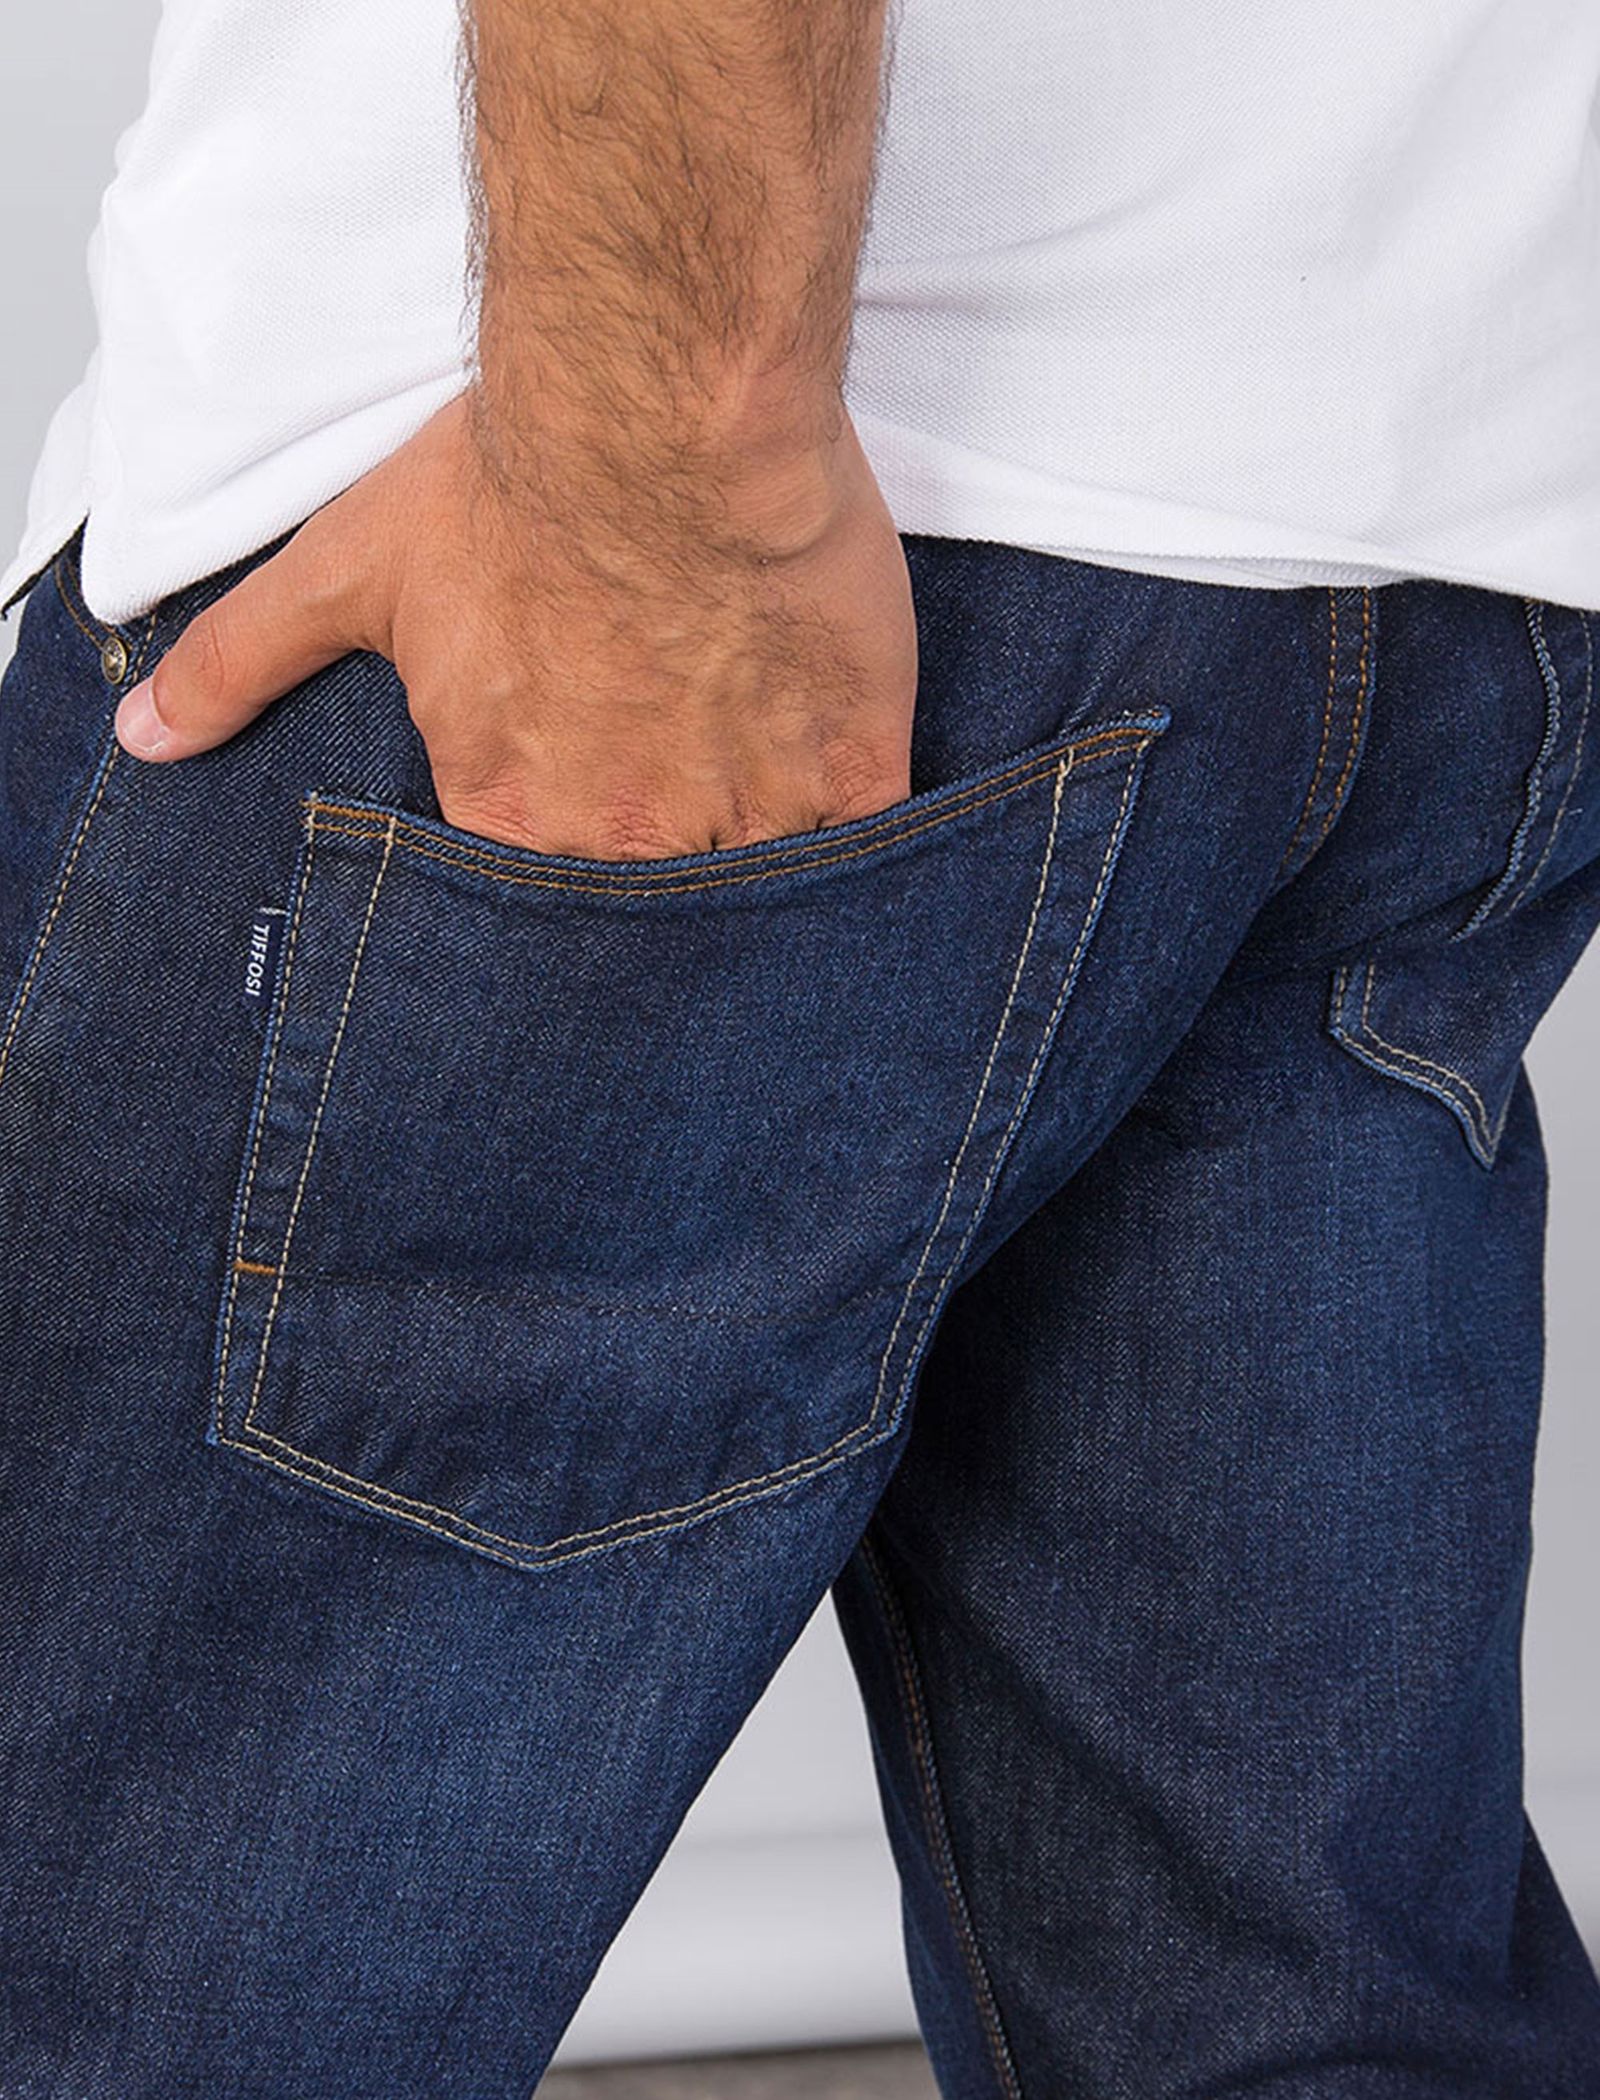 شلوار جین راسته مردانه - تیفوسی - آبي - 7